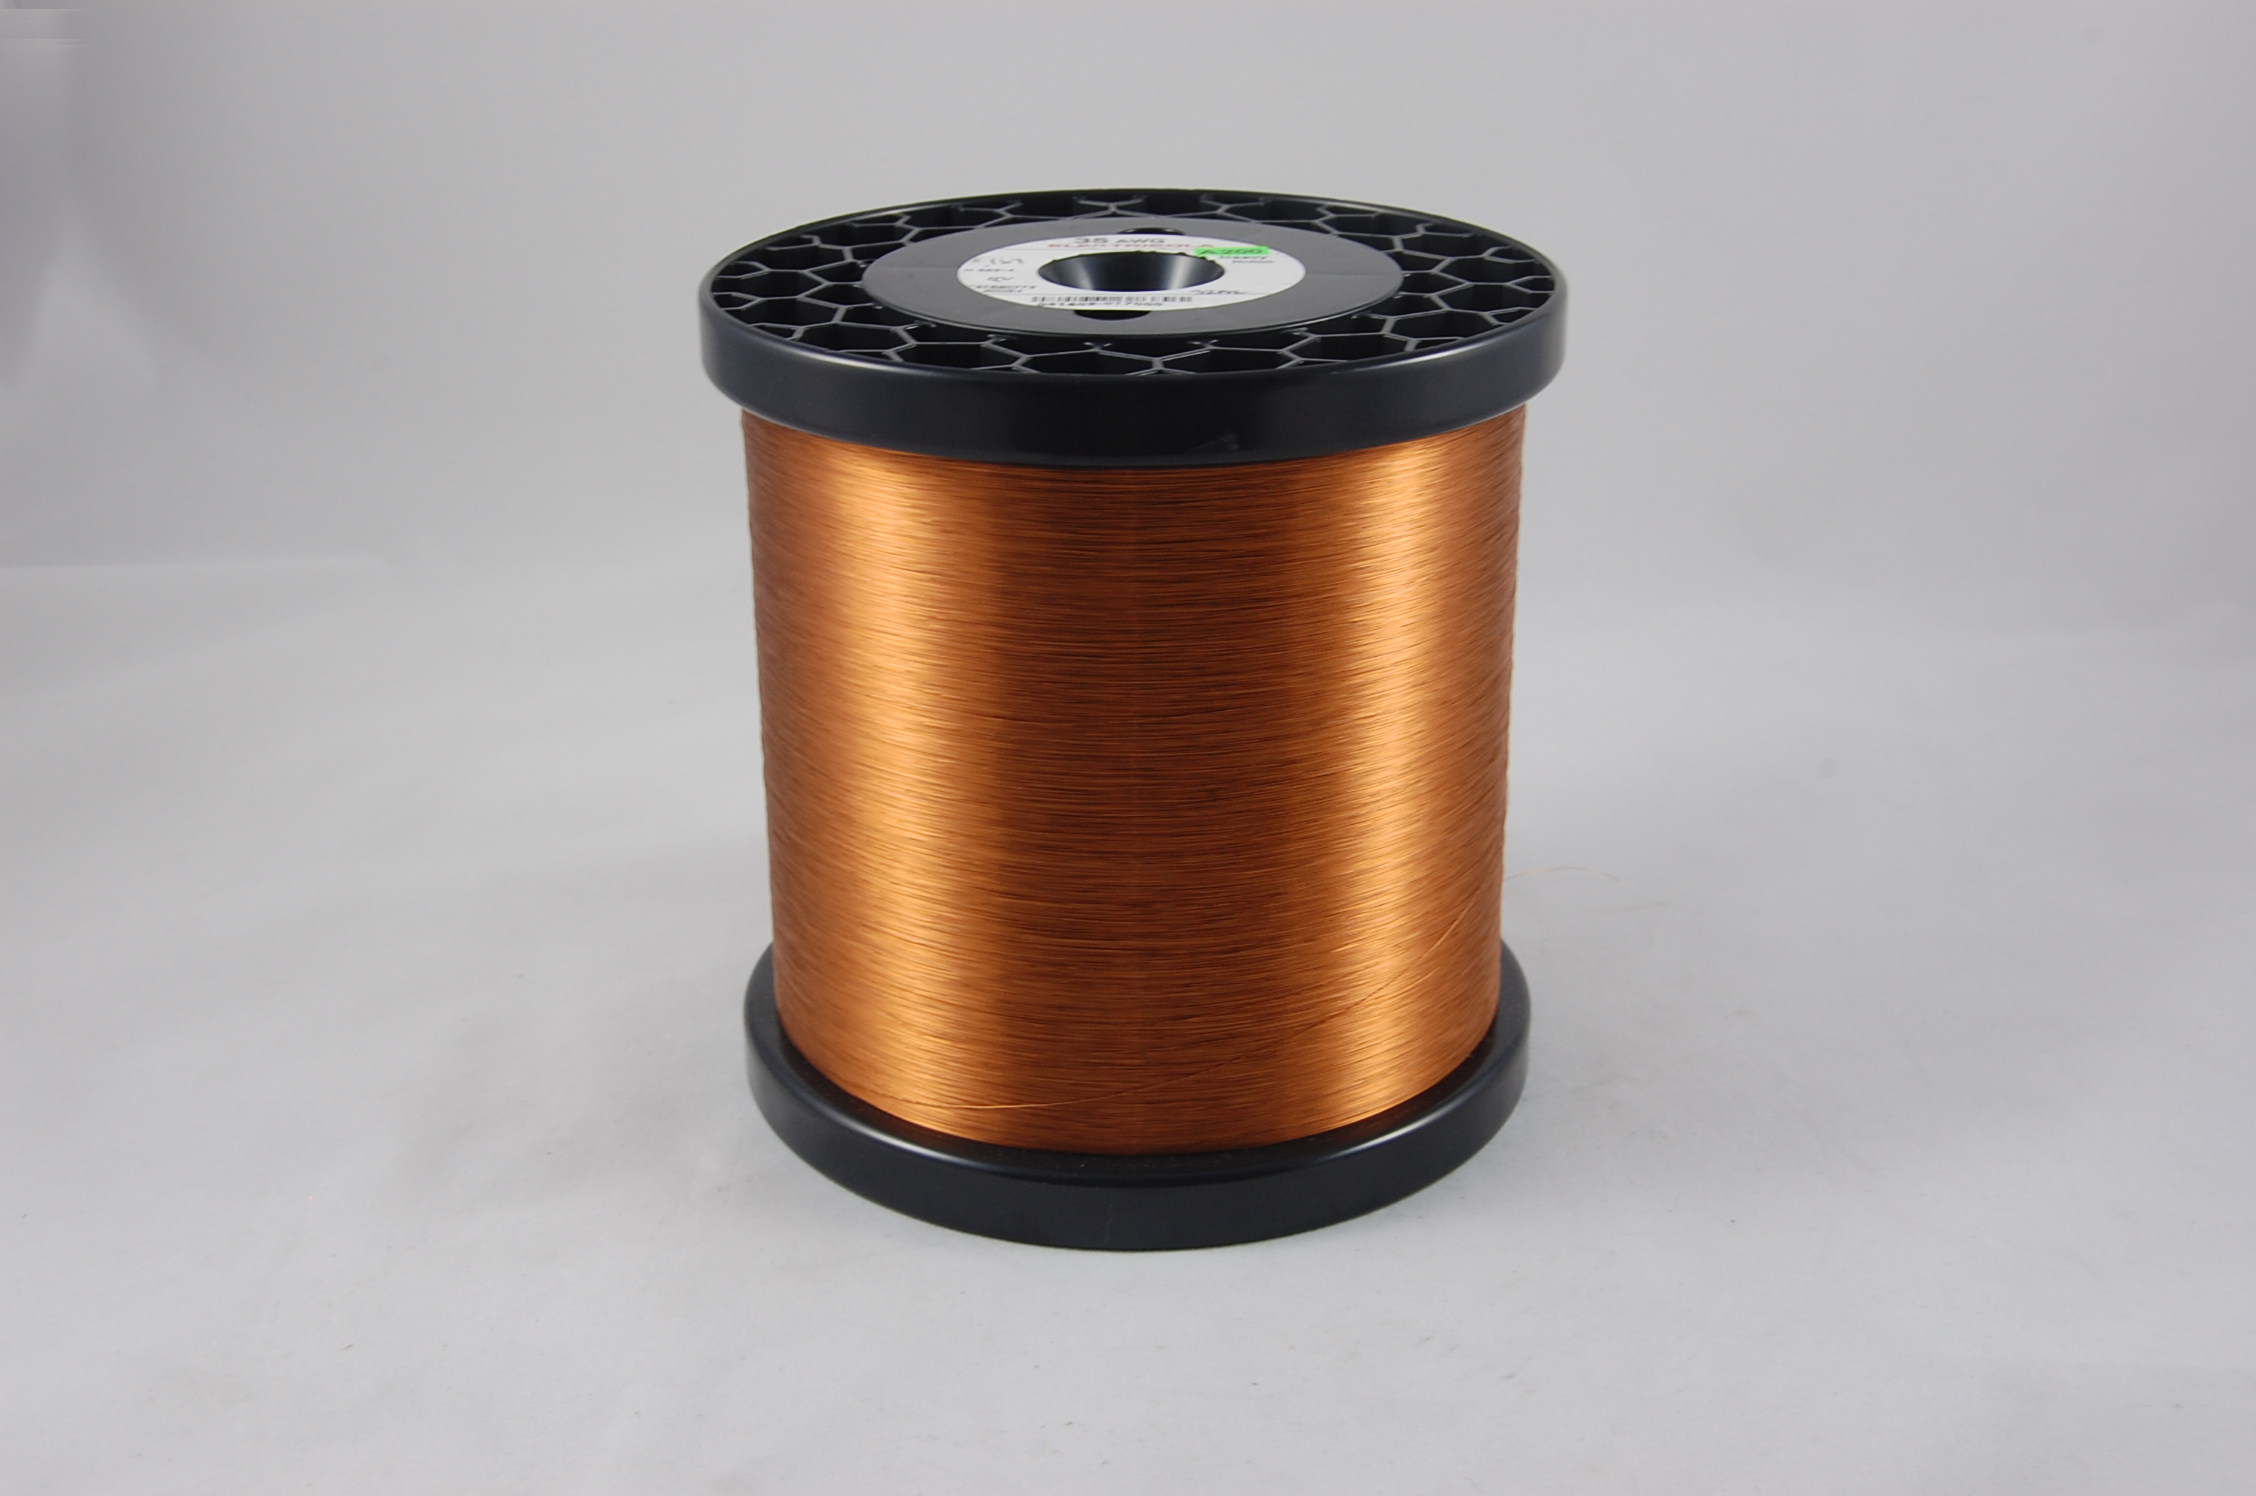 #44 Heavy Amidester 200 Round MW 74 Copper Magnet Wire 200°C, copper,  14 LB 6" x 6" spool (average wght.)